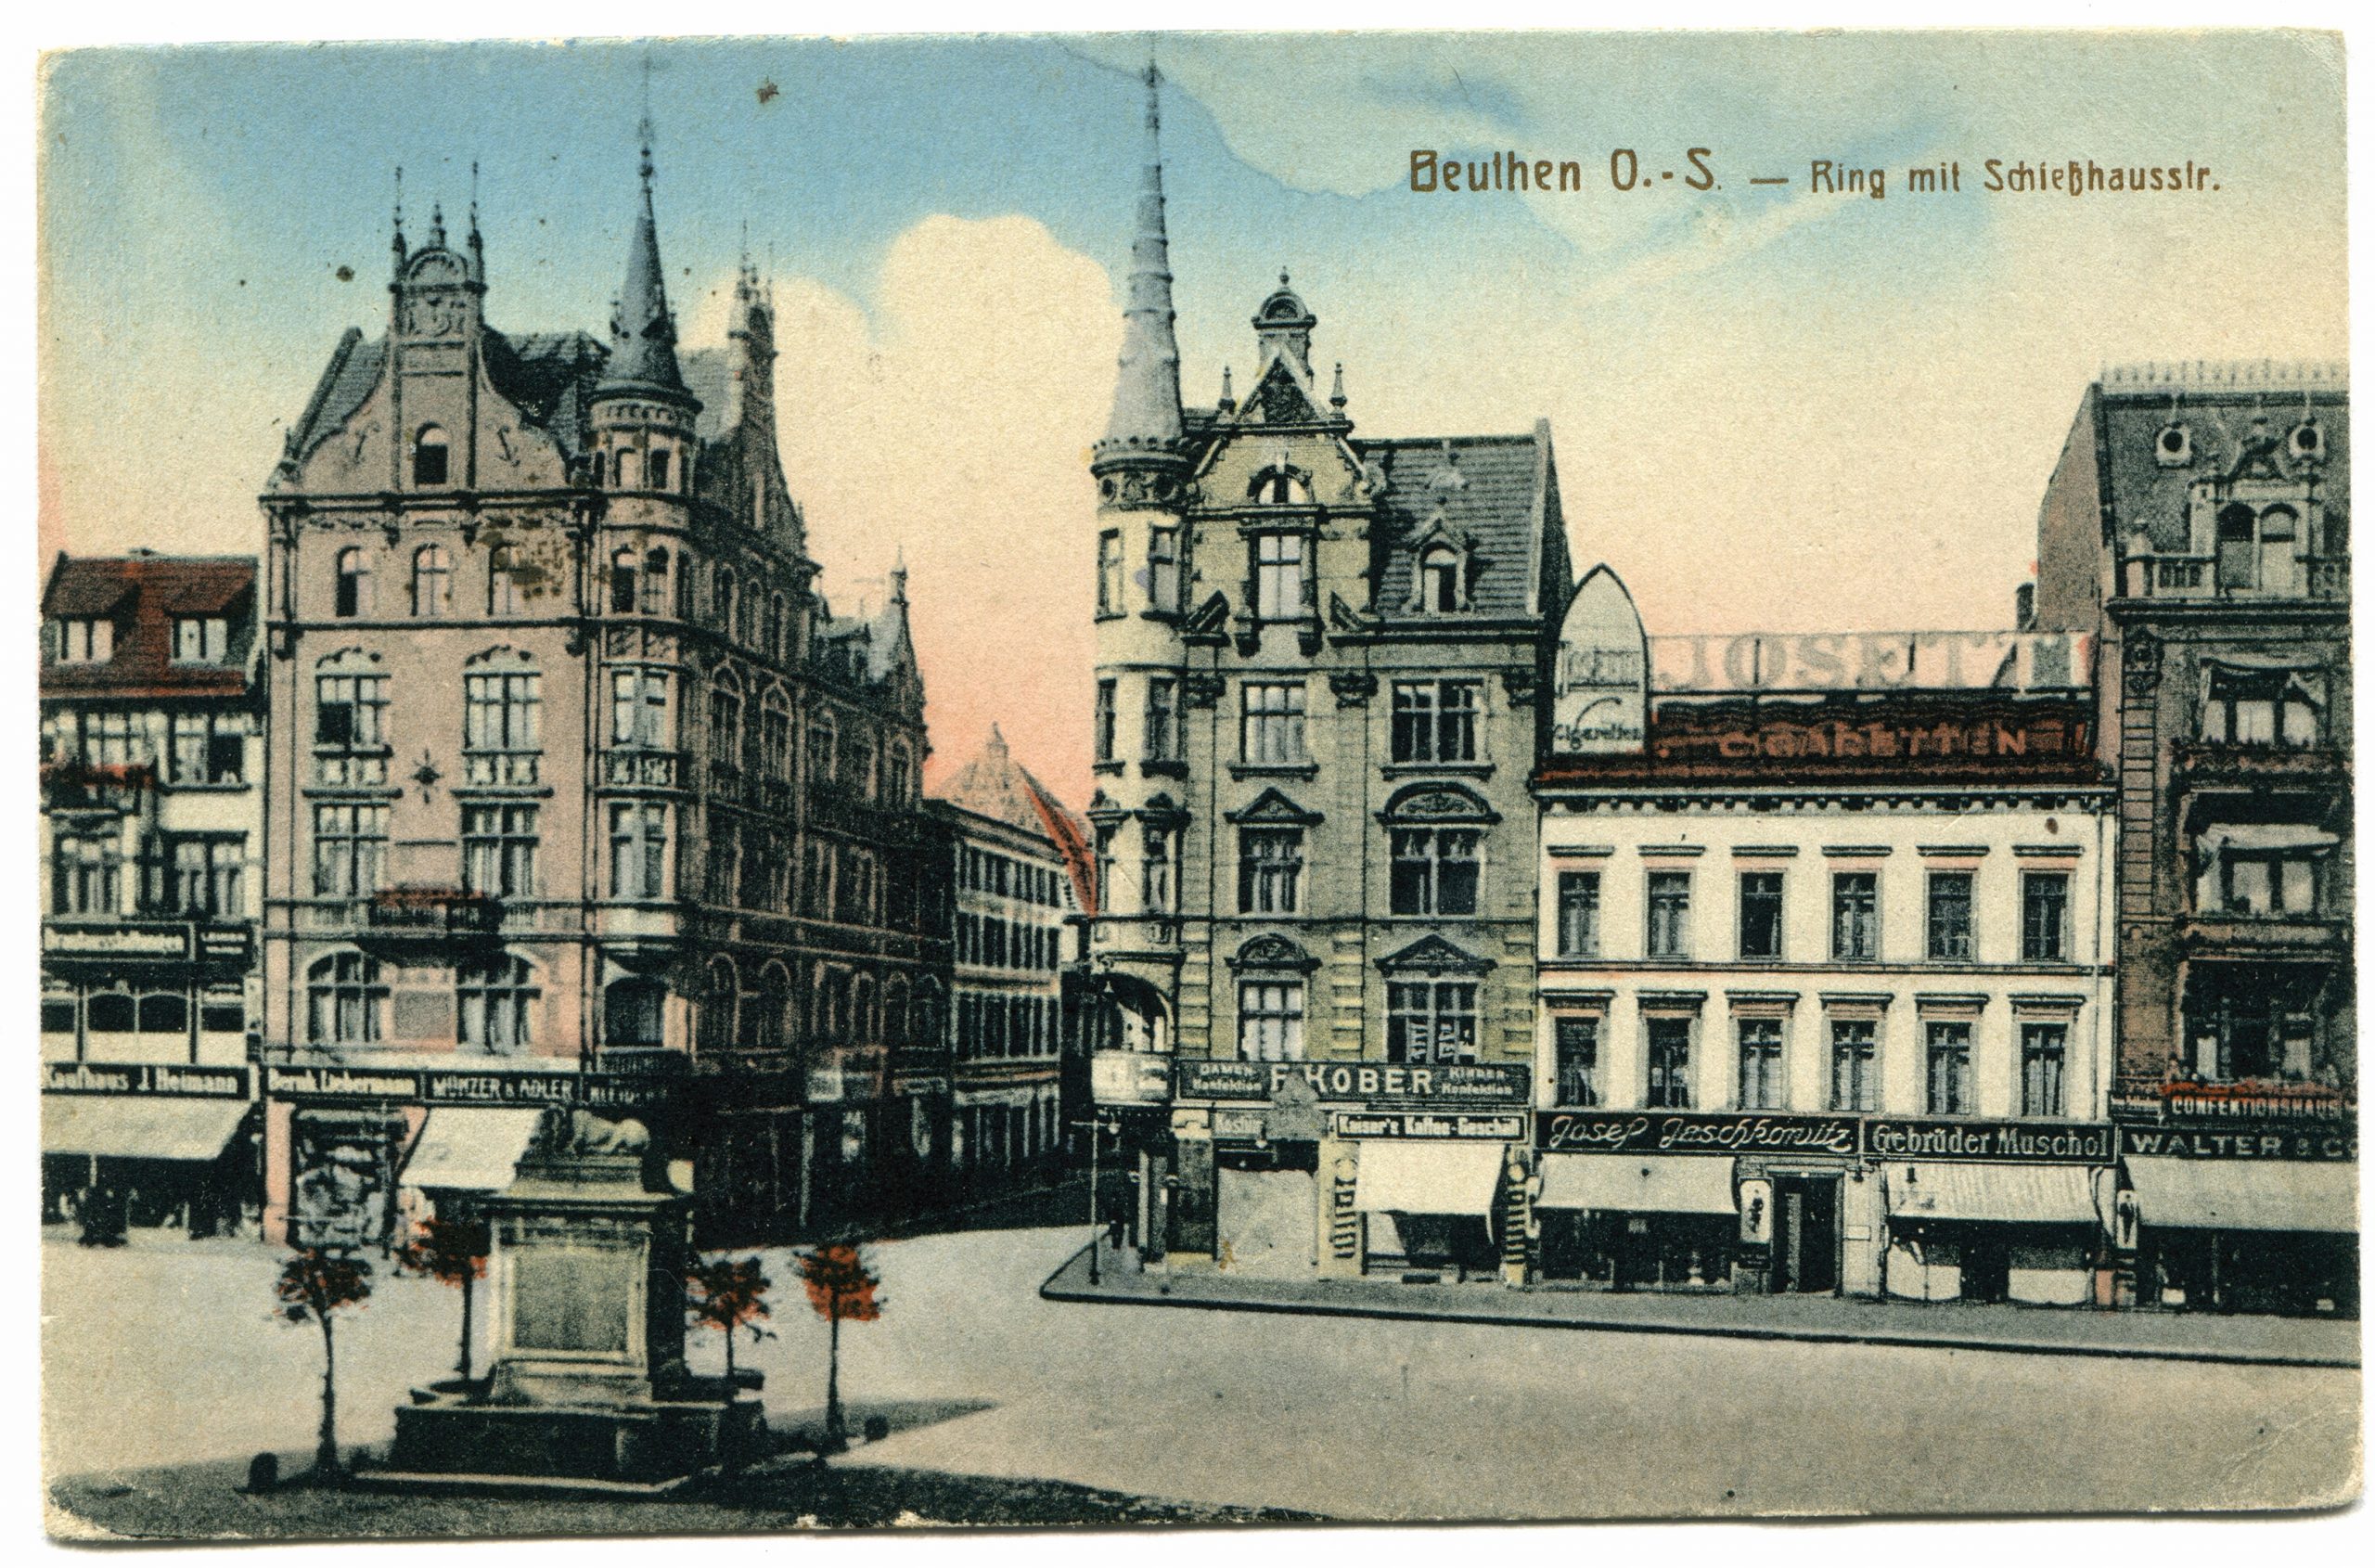 Beuthen O. S. - Ring mit Schießhausstr. Postkartenansicht um 1915